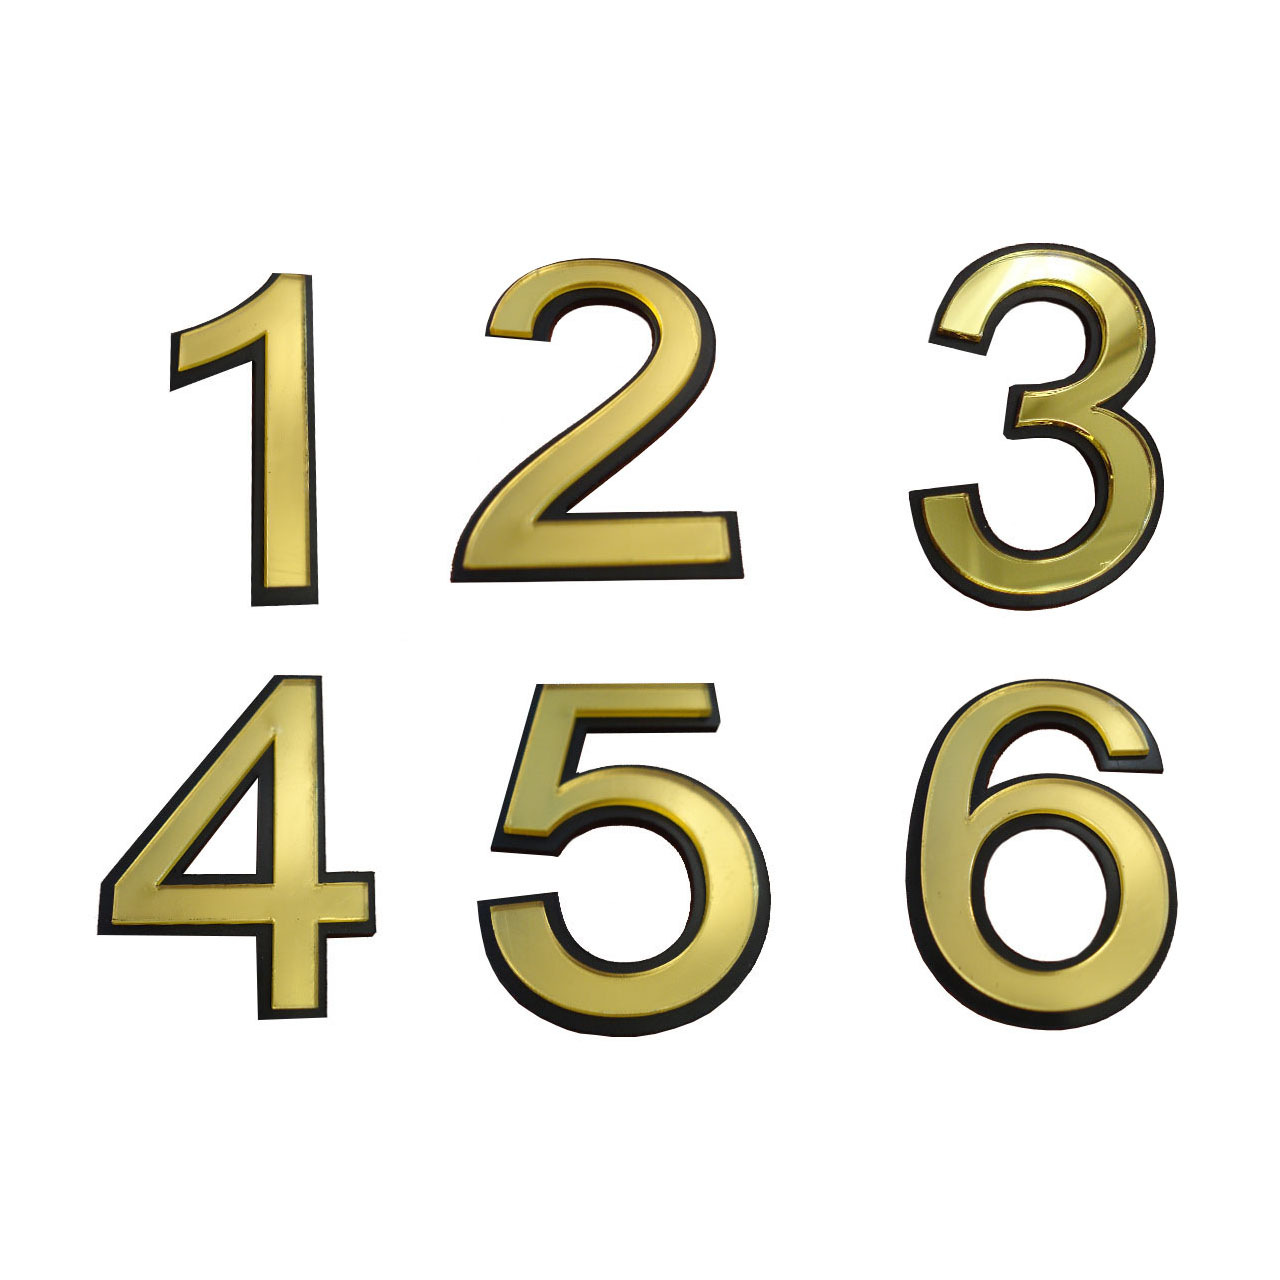 تابلو نشانگر طرح شماره واحد مدل snumb6 مجموعه 6 عددی